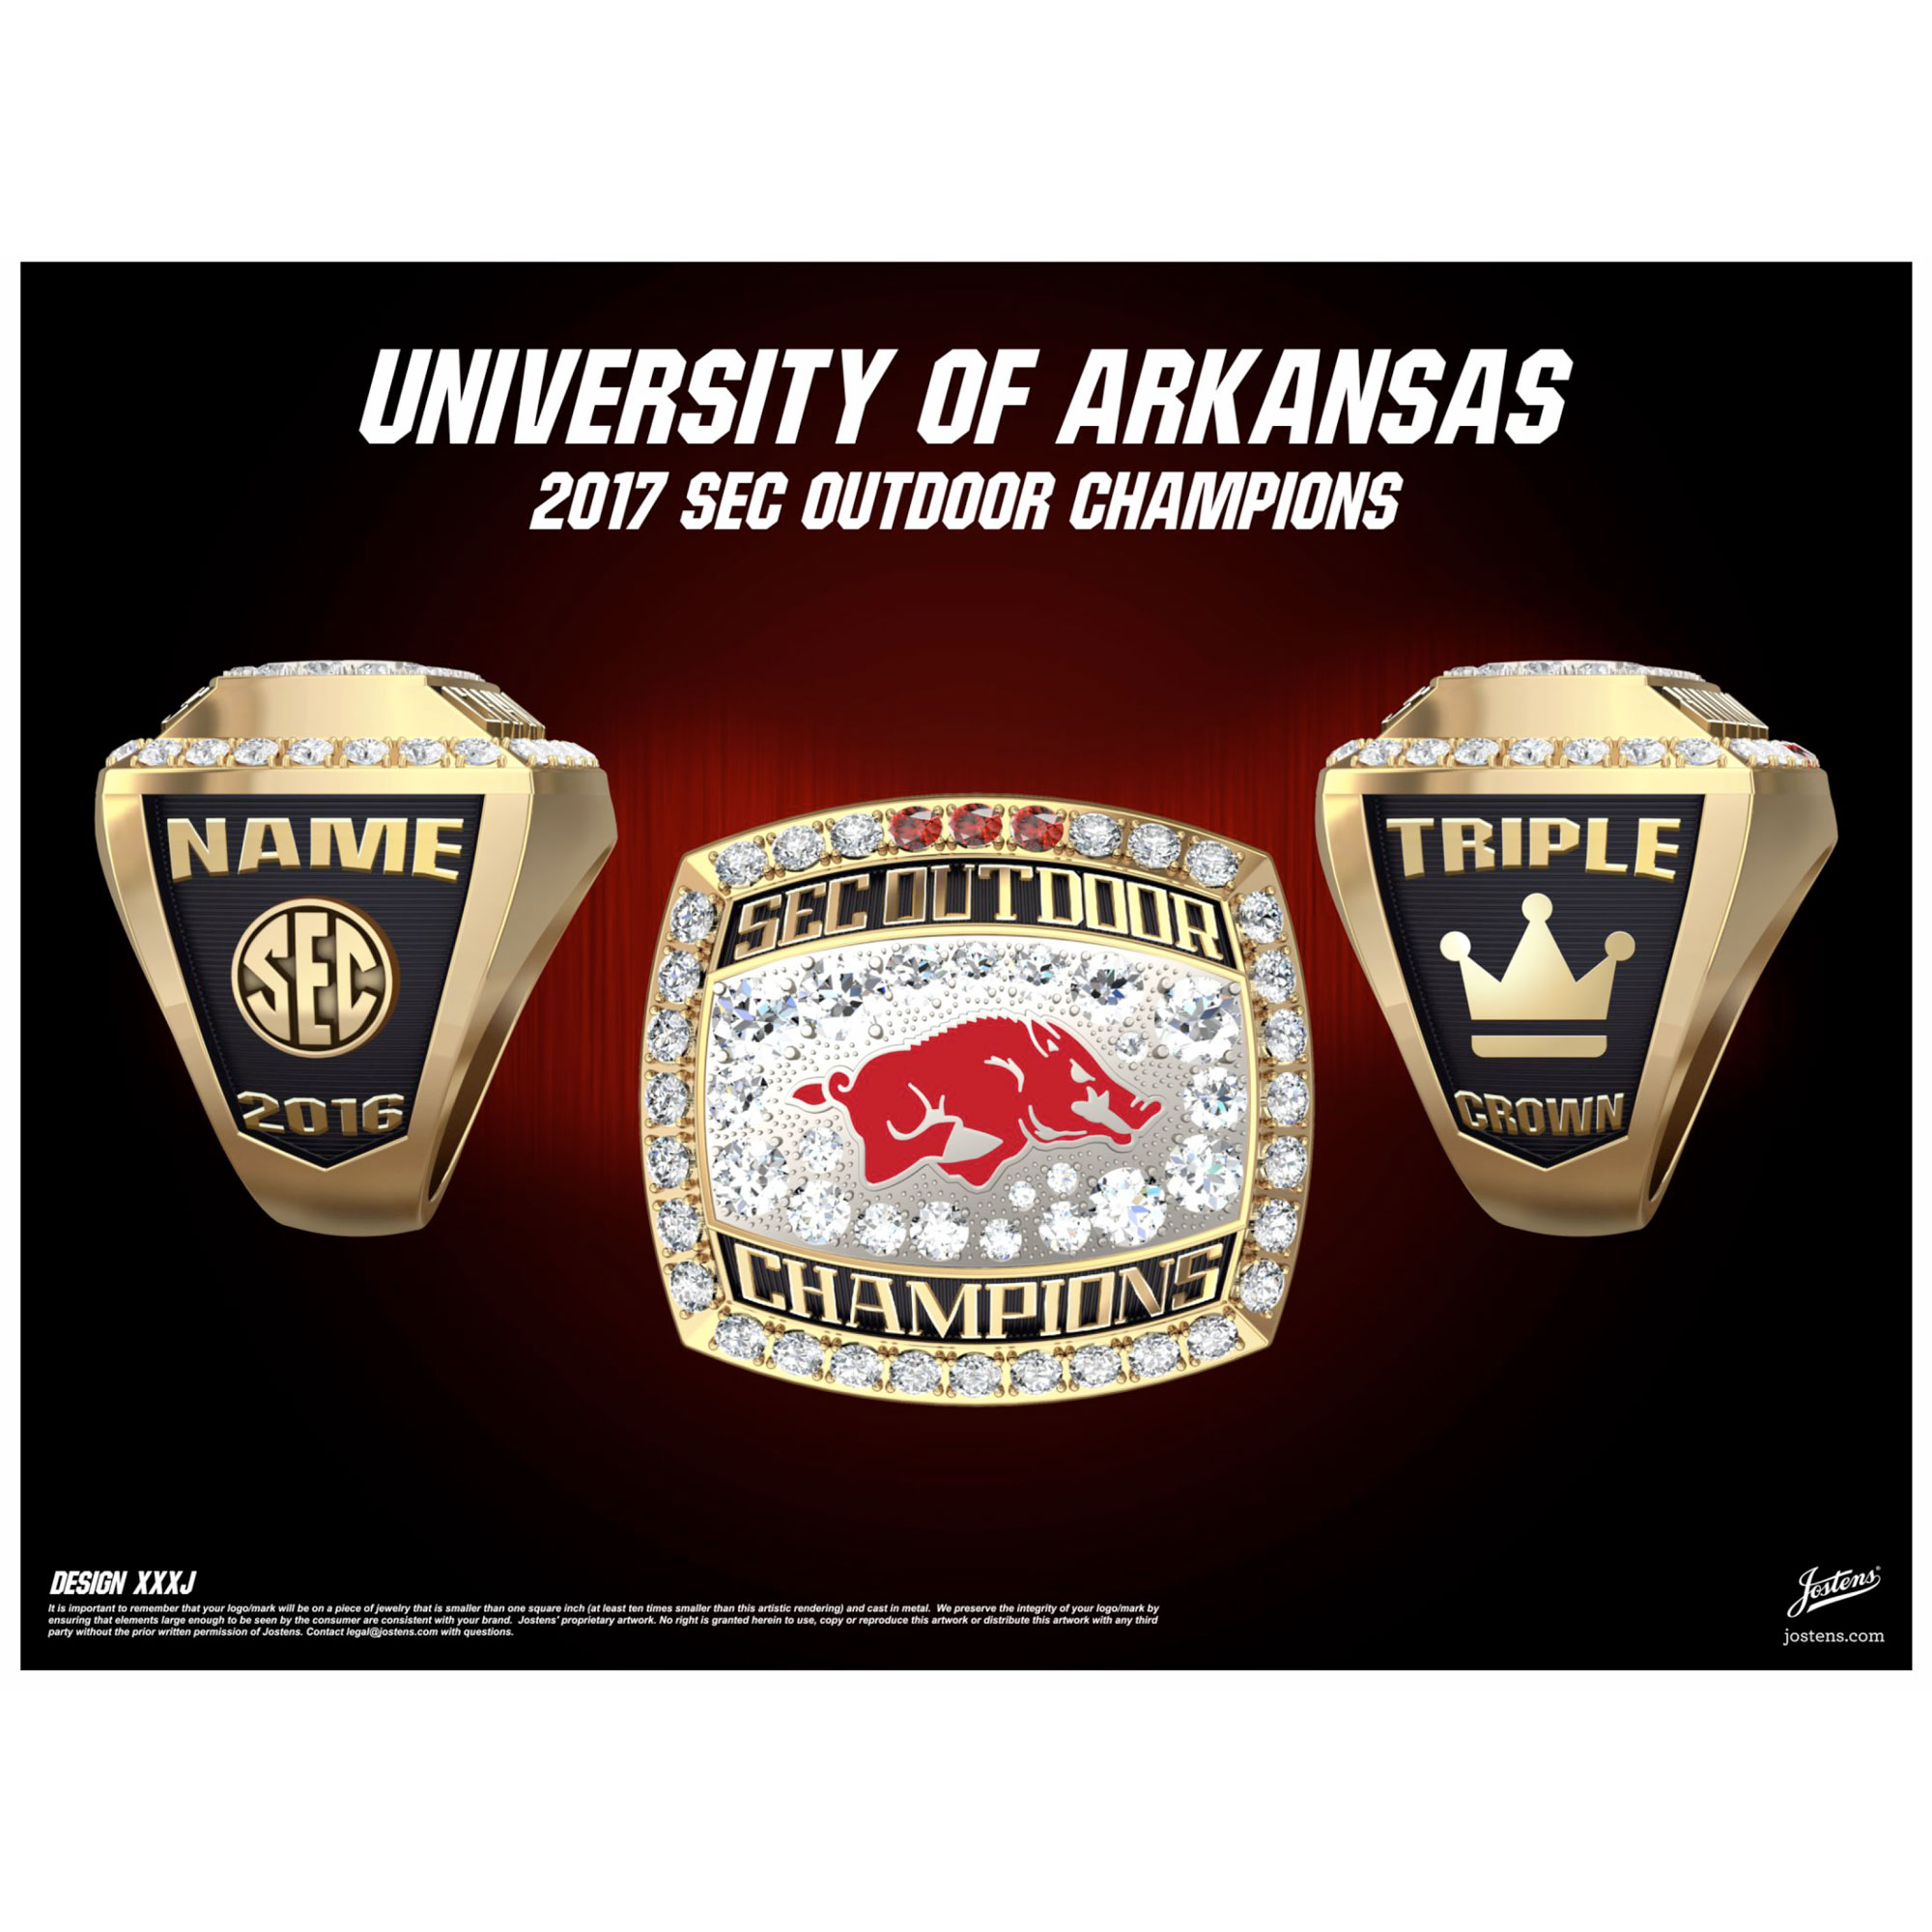 University of Arkansas Men's Track & Field 2016 SEC Championship Ring